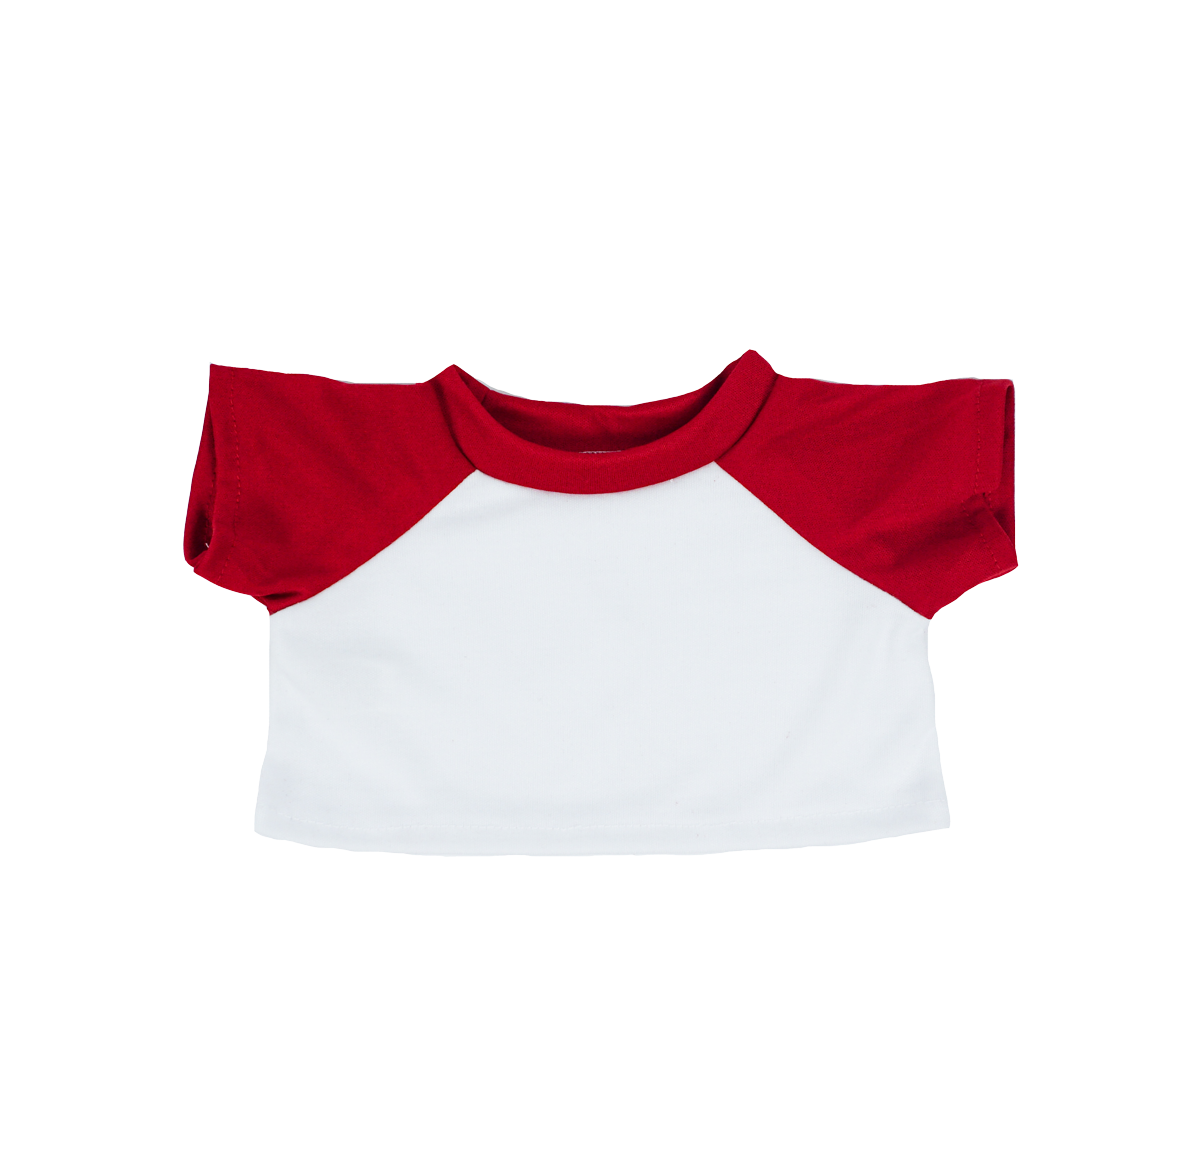 16" Plush Bear Stuffy Red and White T-Shirt